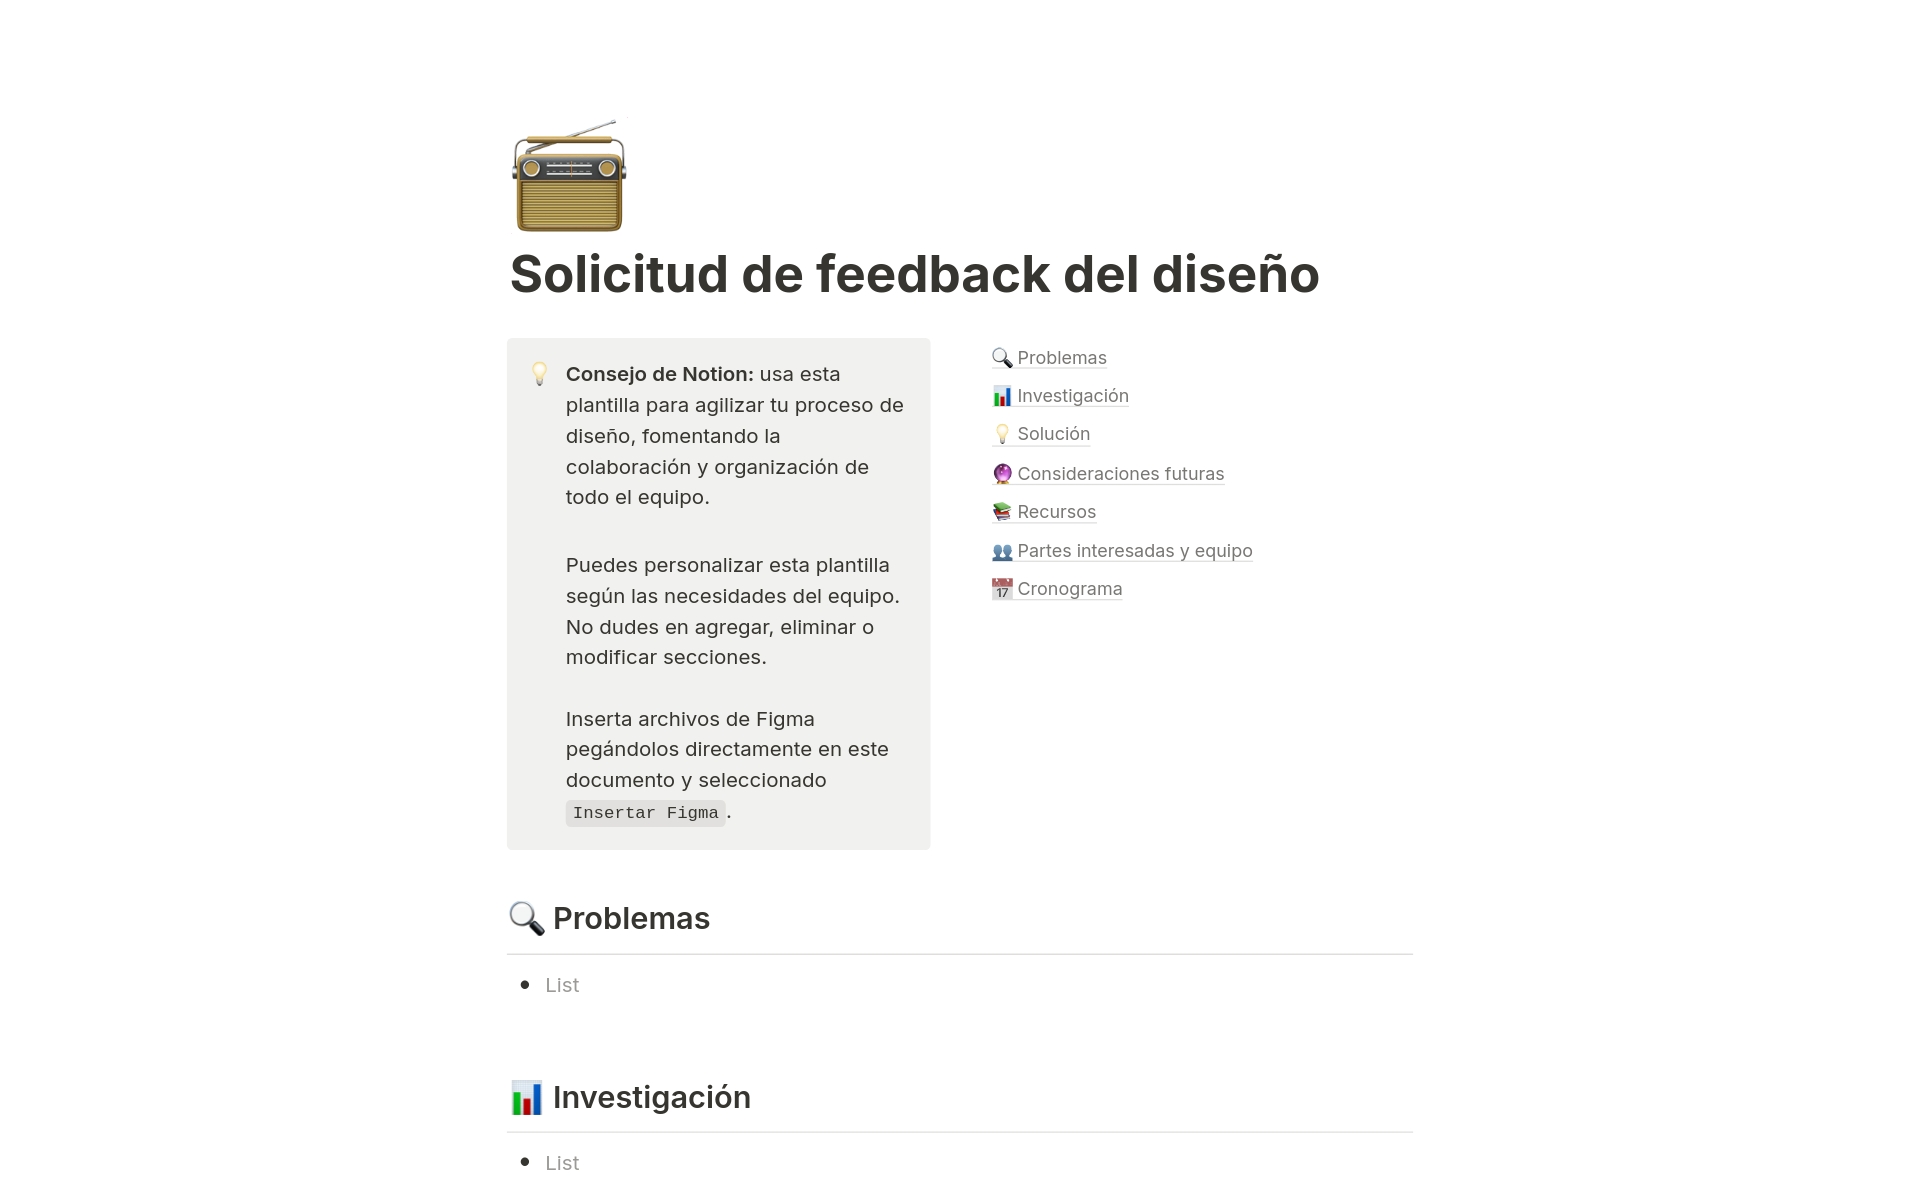 Vista previa de una plantilla para Solicitud de feedback del diseño